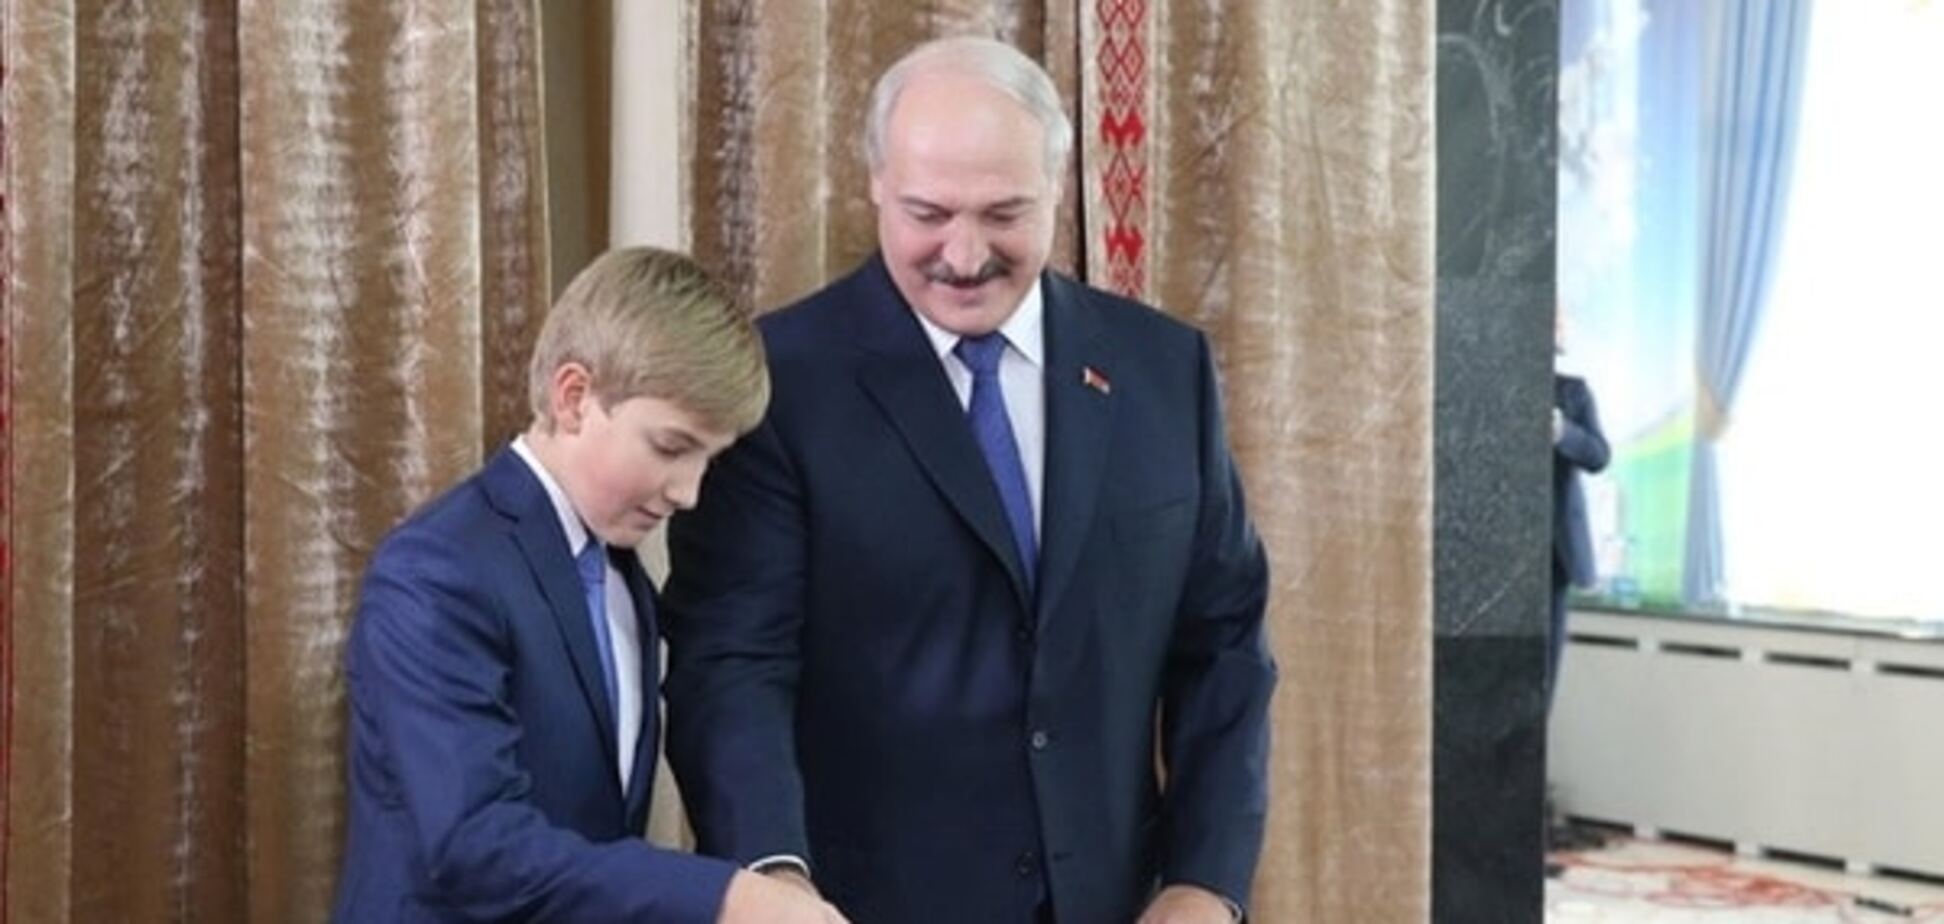 Еще не выиграл, уже угрожает: Лукашенко после голосования припугнул оппозицию